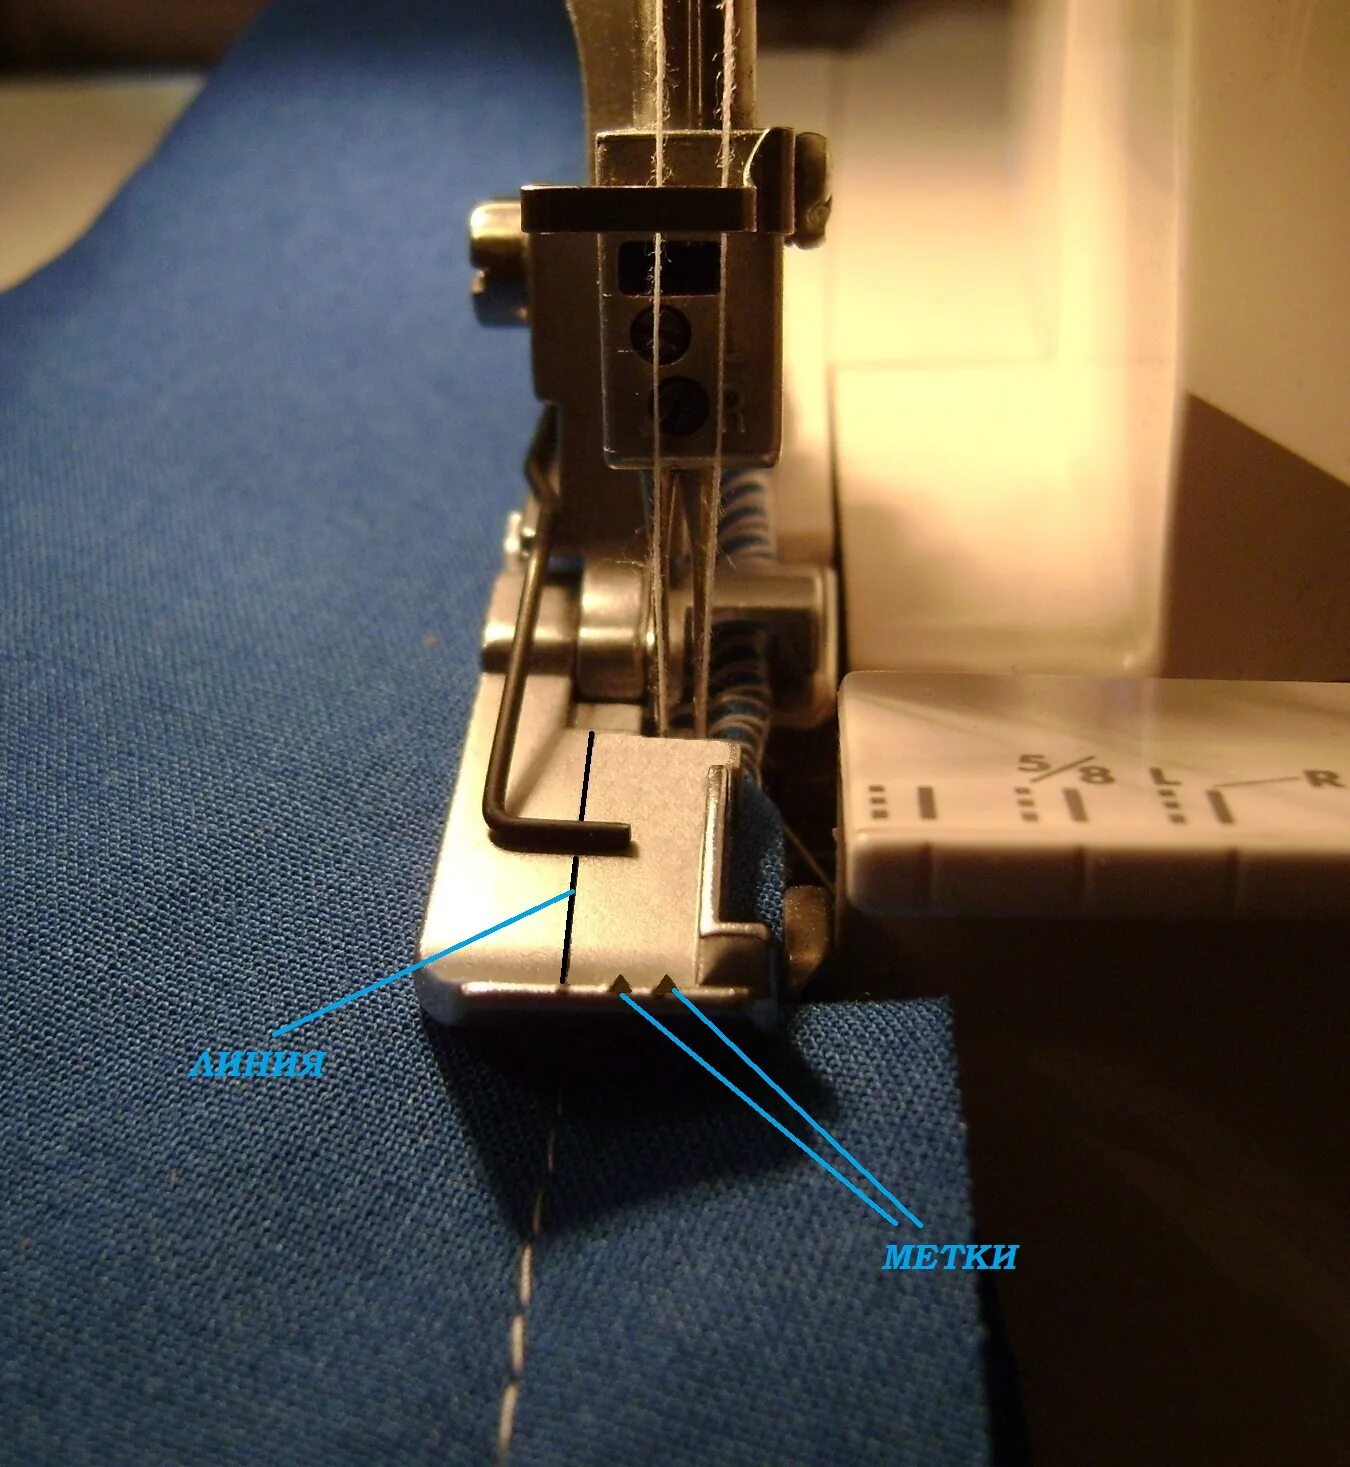 Швейная машинка рвется верхняя нить. Что можно сшить на швейной машинке для начинающих. Что можно сшить на швейной машинке в 1 раз.